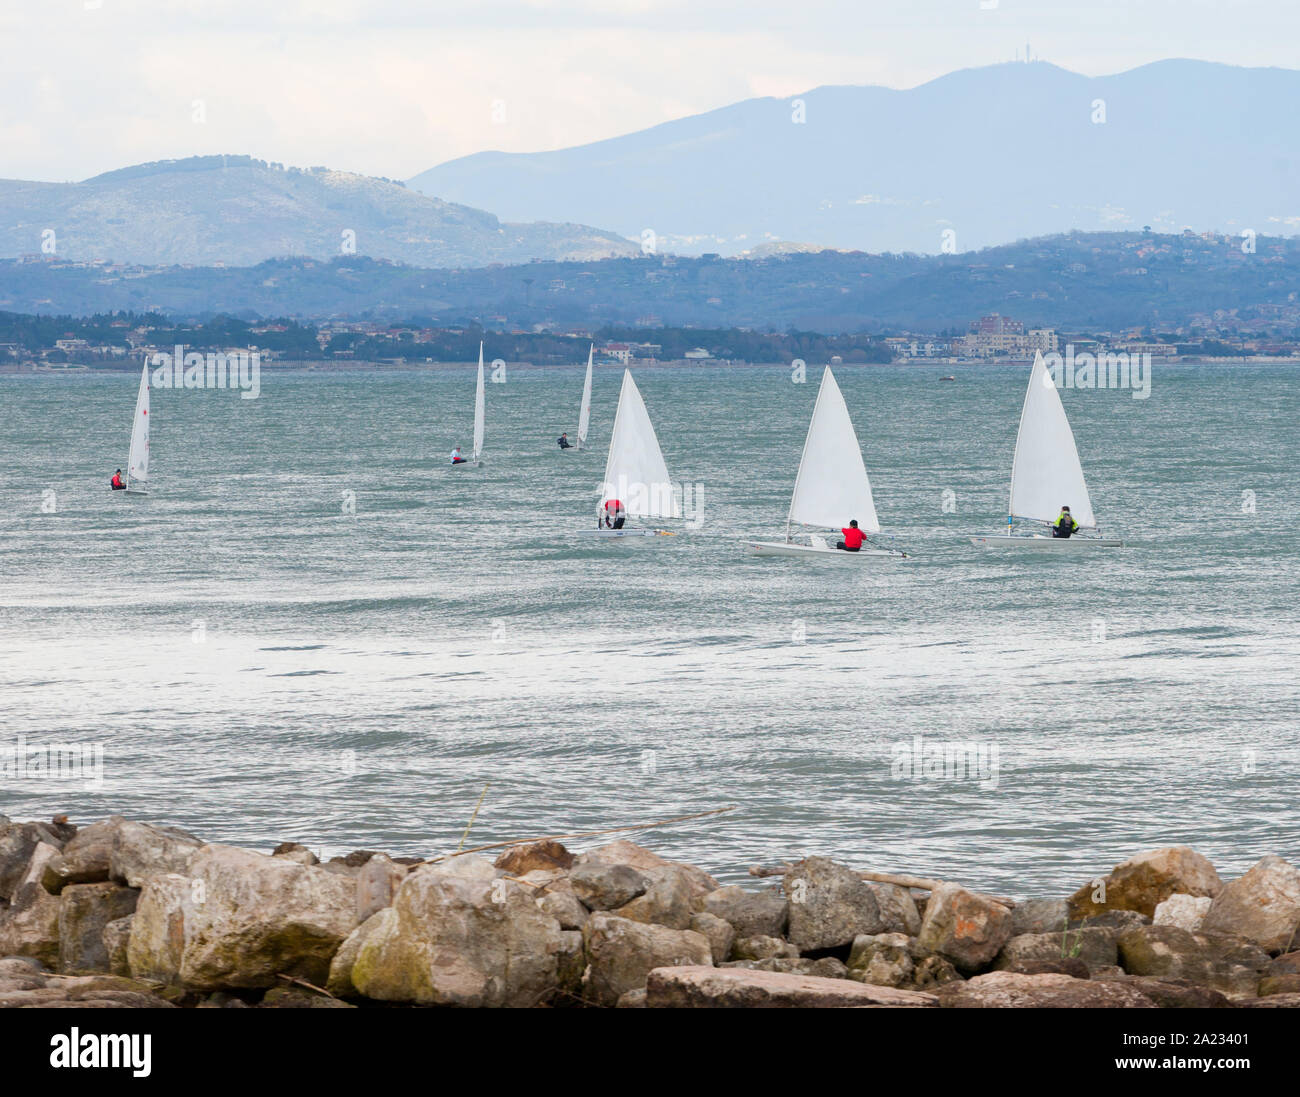 Many sailboat racing on the sea near the coast Stock Photo